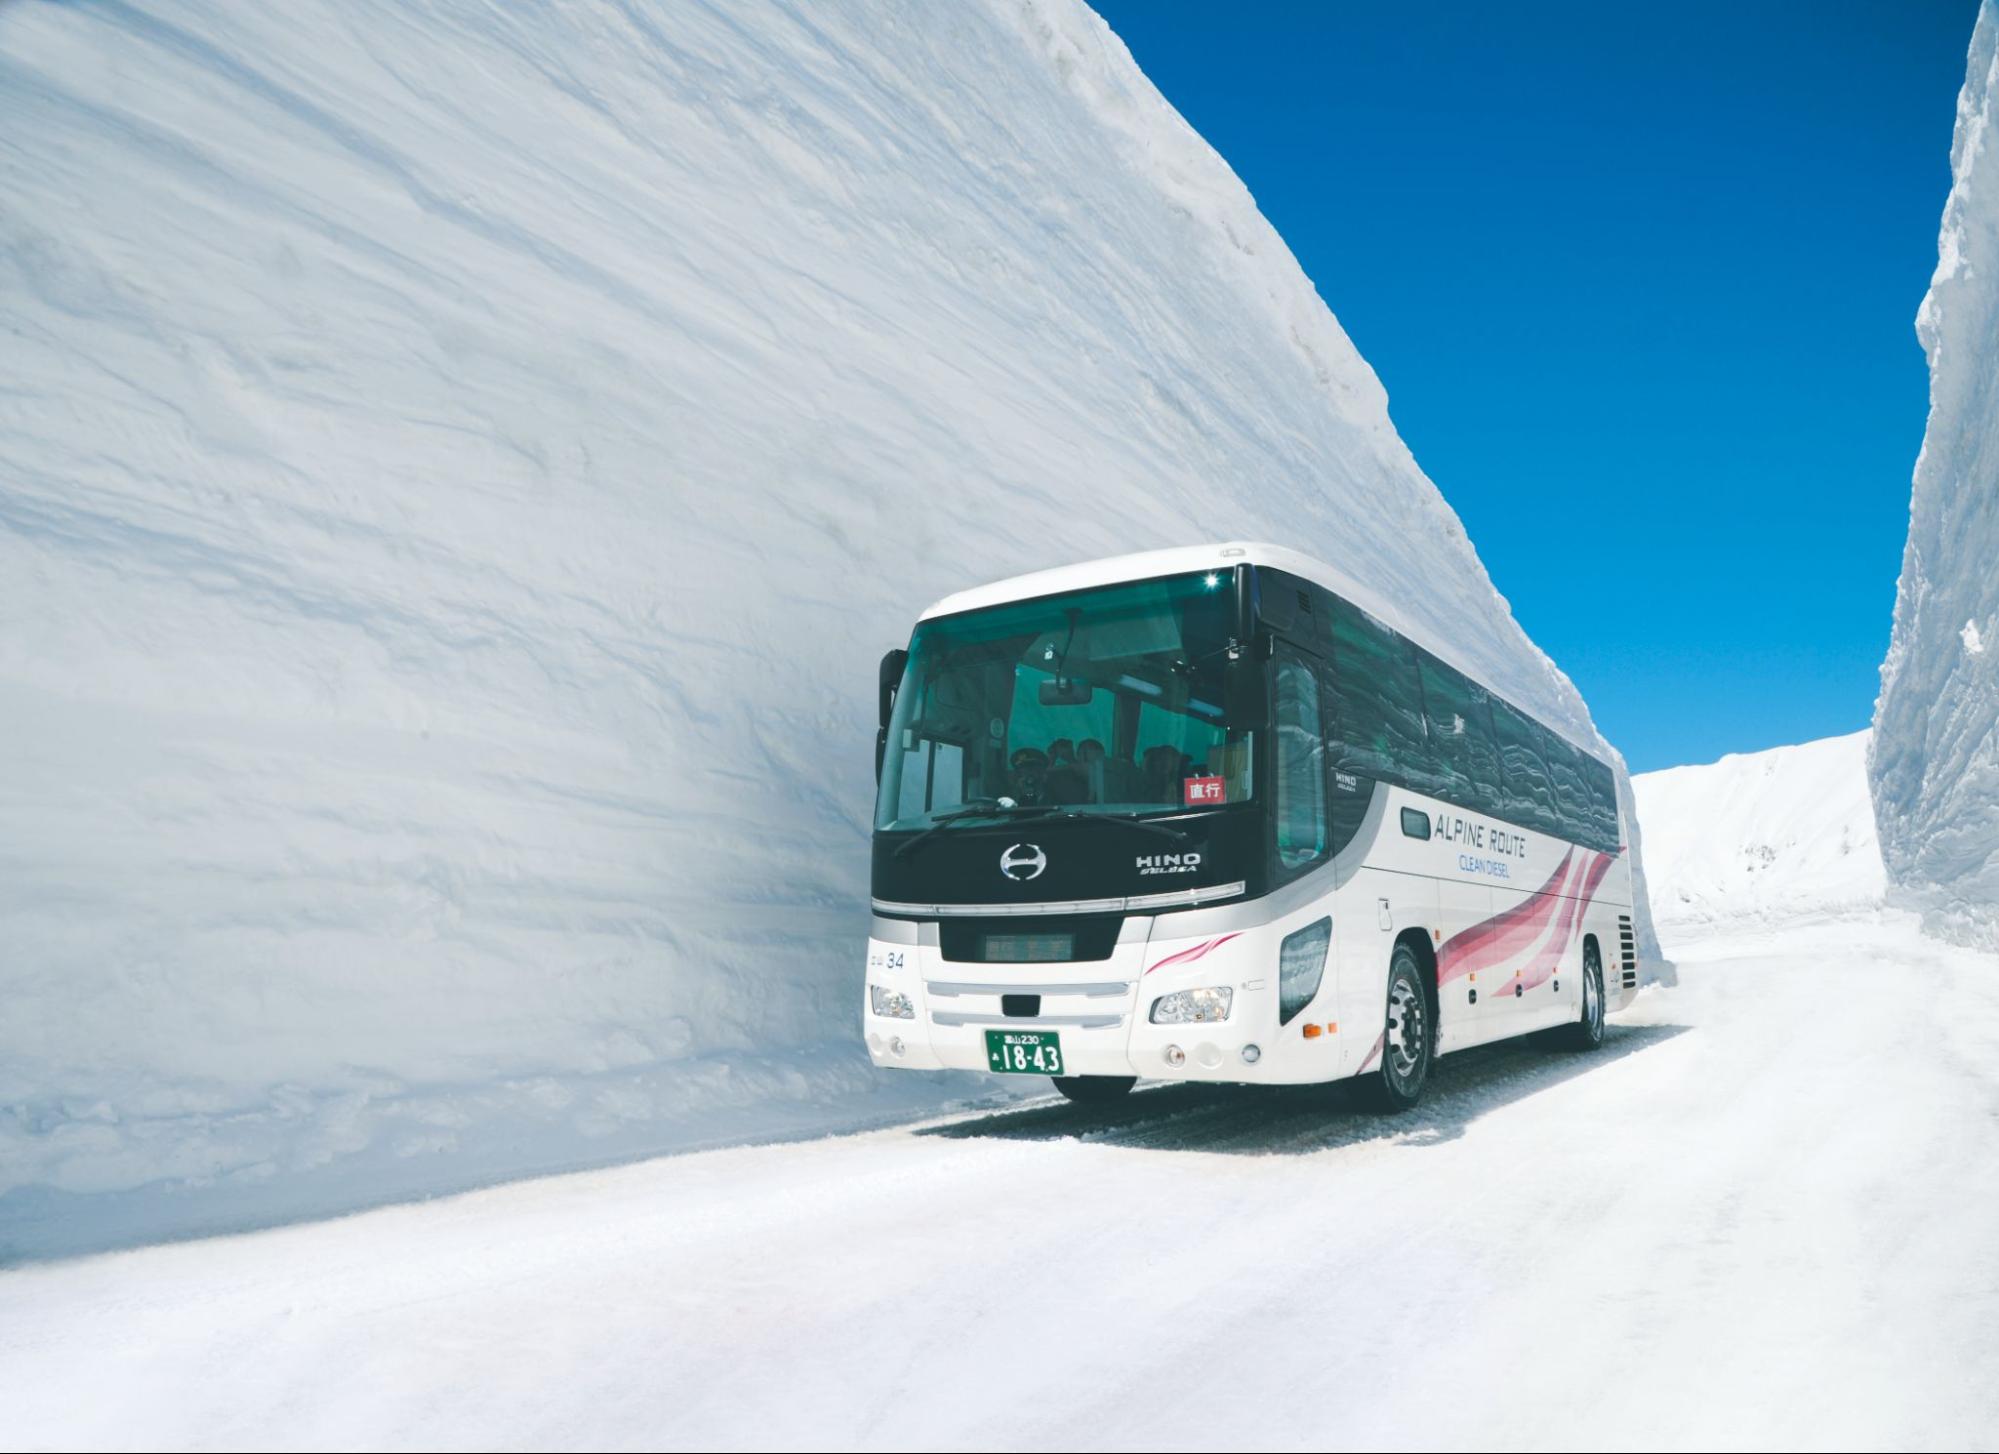 Tateyama Kurobe Alpine Route - Tateyama Snow Corridor